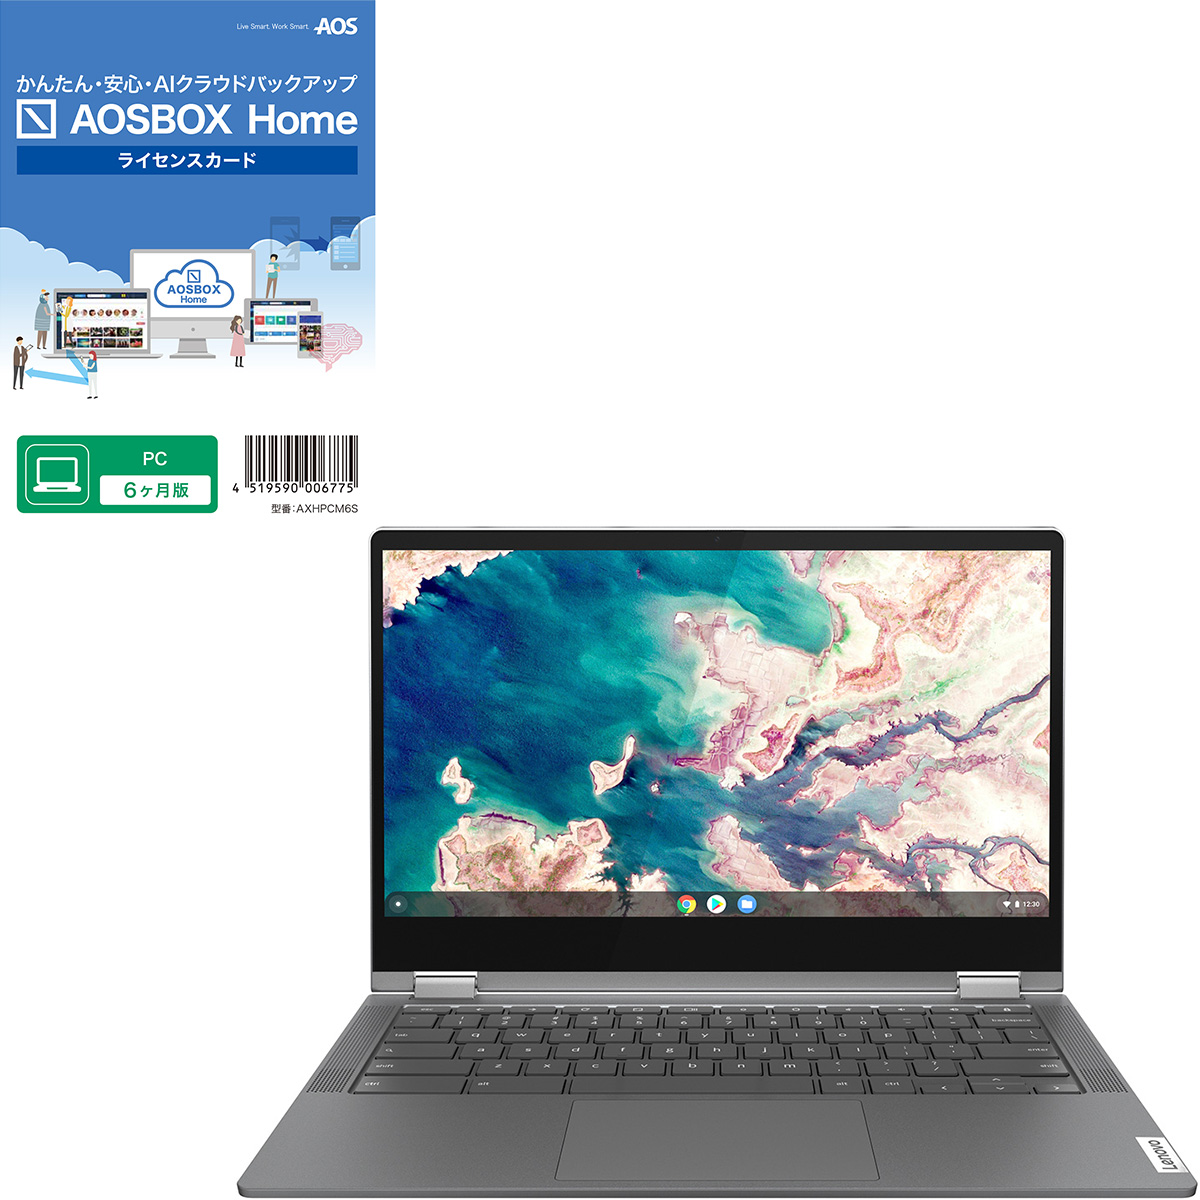 Lenovo　29,800円 限定特典付き Chromebook 新品 ノートパソコン IdeaPad Flex550i 13.3型 メモリ4GB タッチパネル対応 82B80018FP  【ひかりTVショッピング】 など 他商品も掲載の場合あり